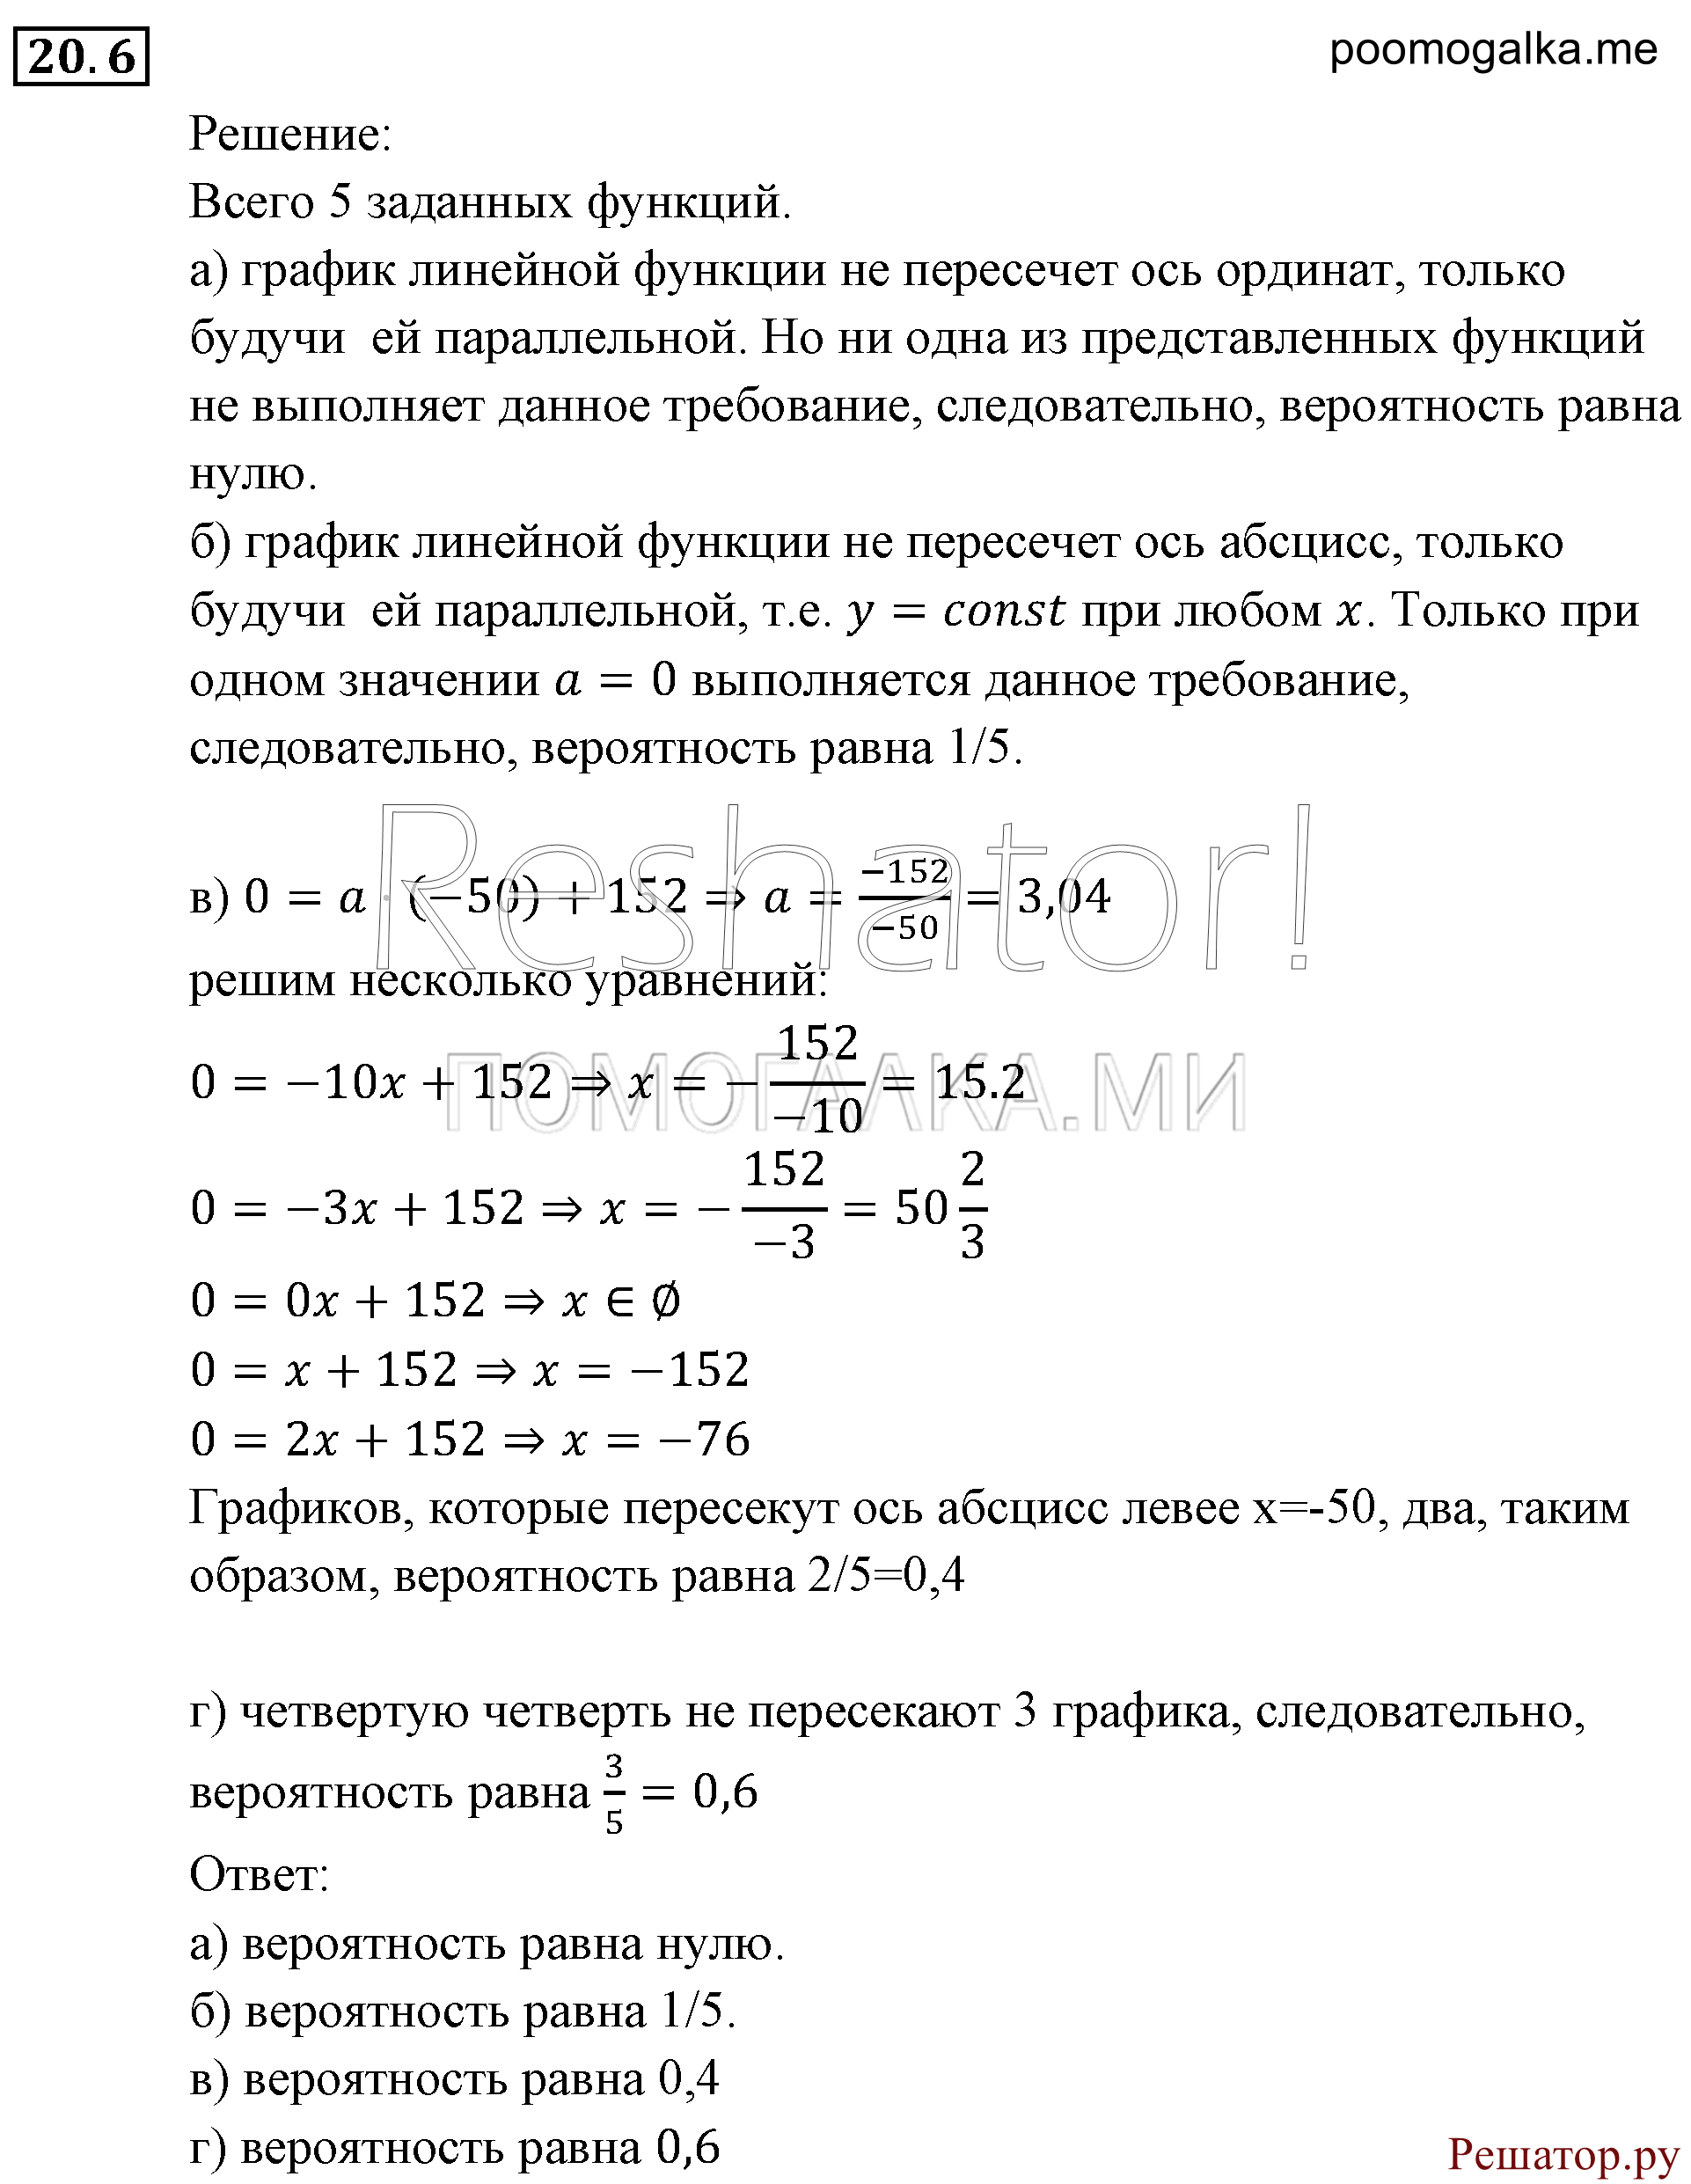 задача №20.6 алгебра 9 класс Мордкович